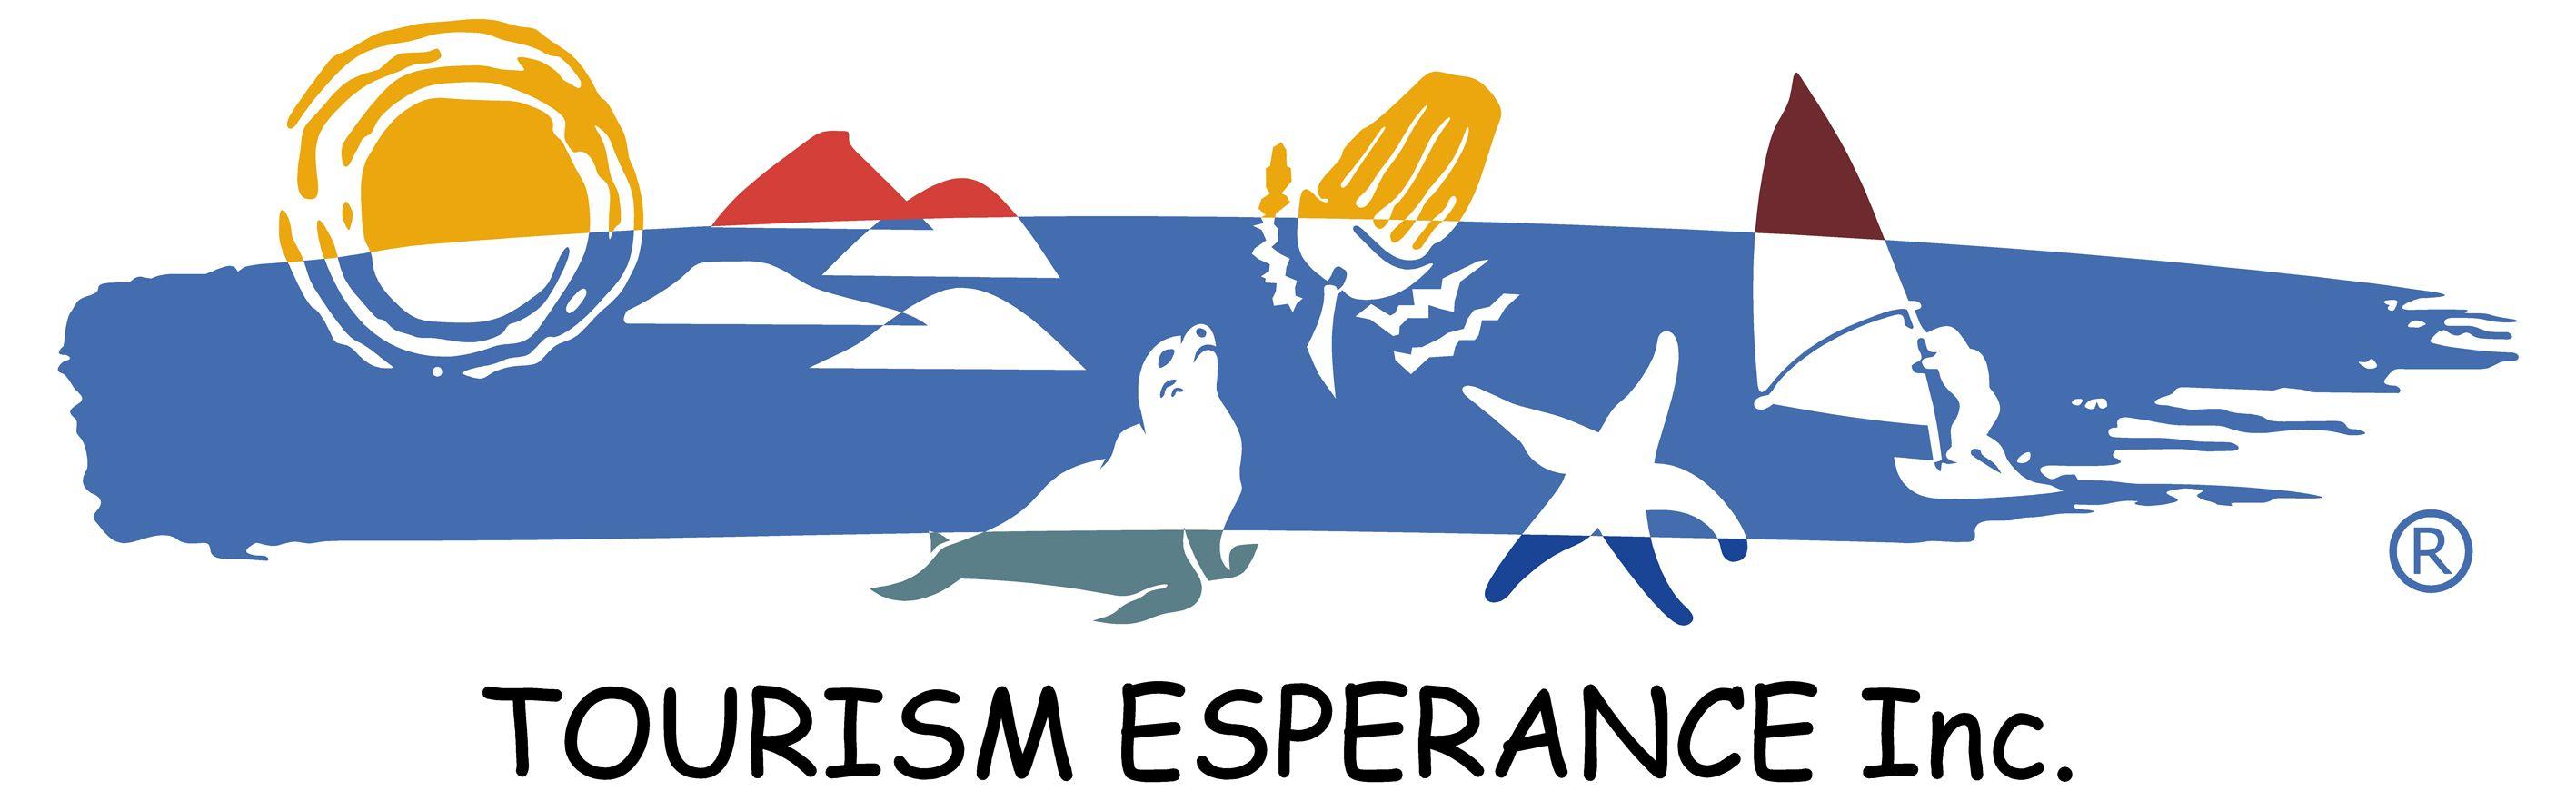 Tourism Australia Logo - ABOUT TOURISM ESPERANCE